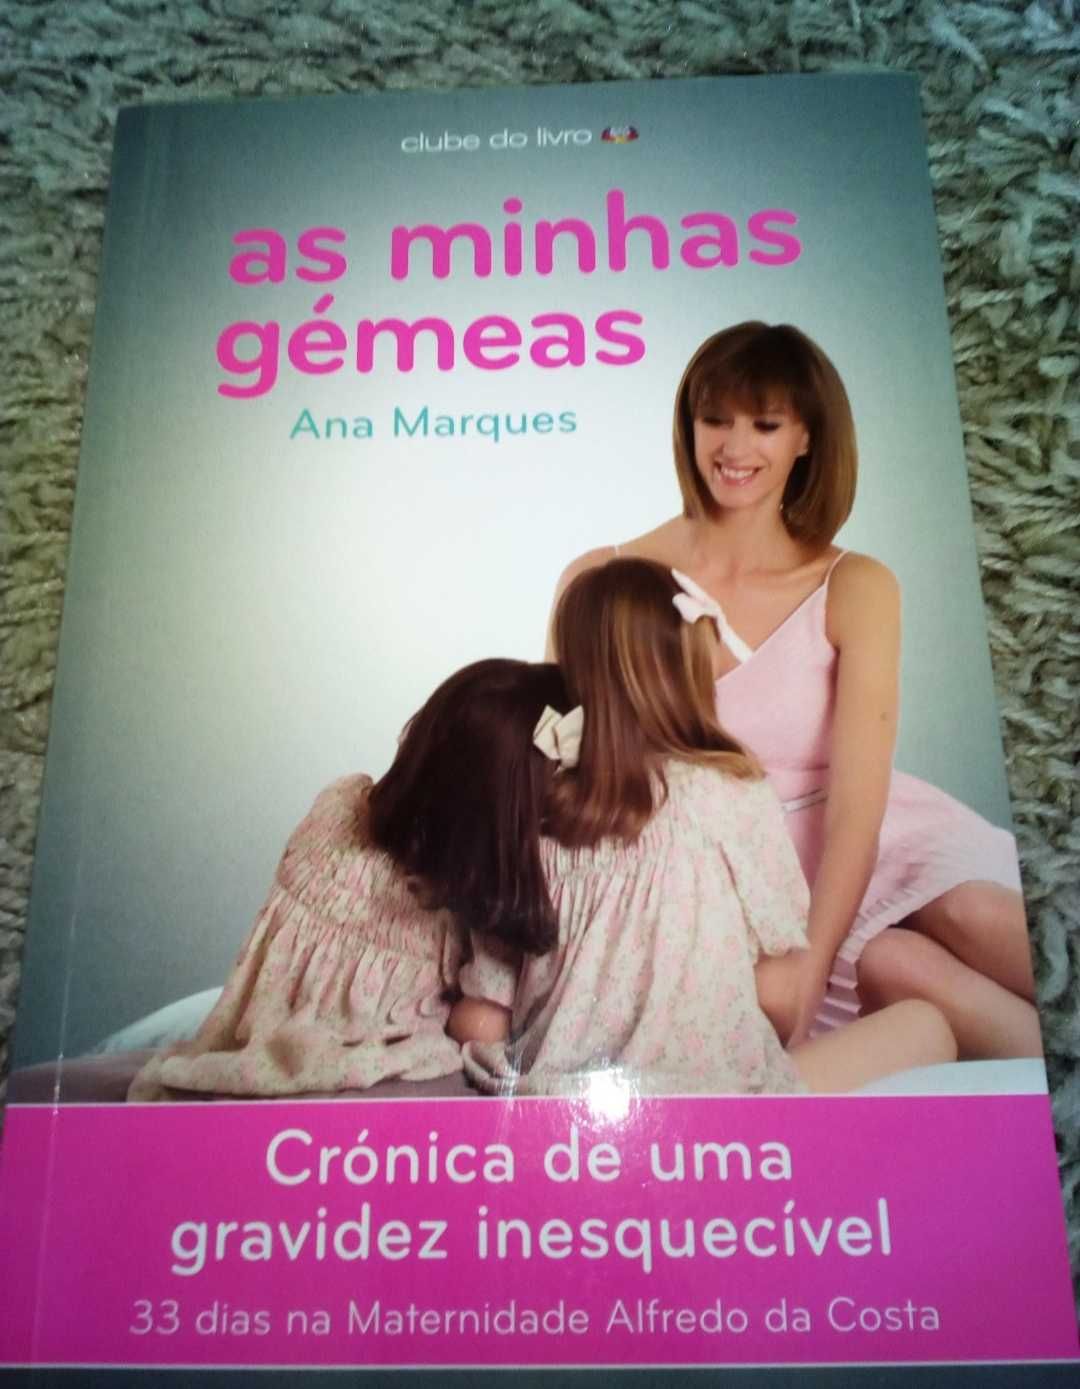 Livro "As minhas gémeas" da autora Ana Marques